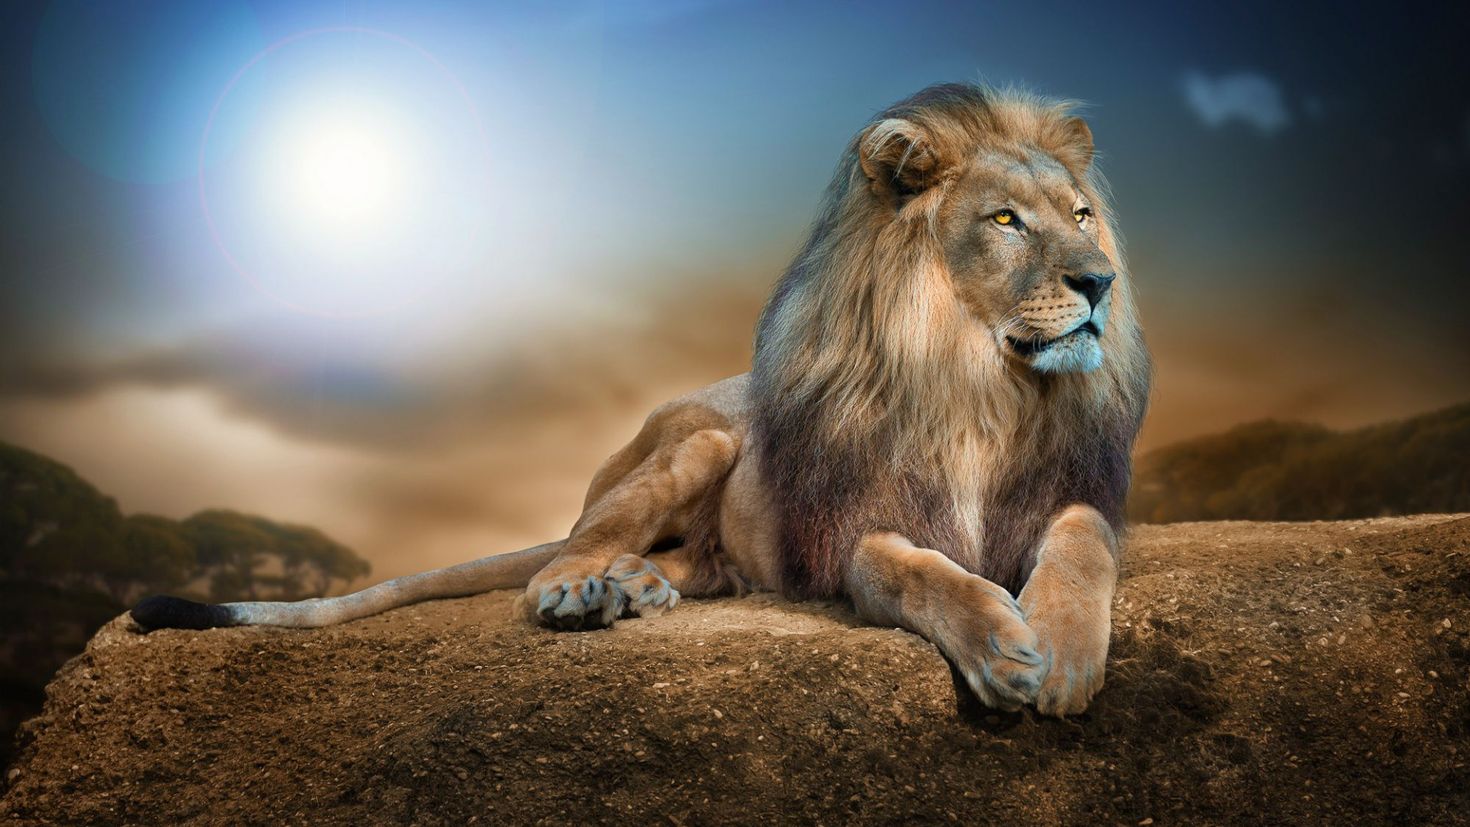 Спокойствие Льва